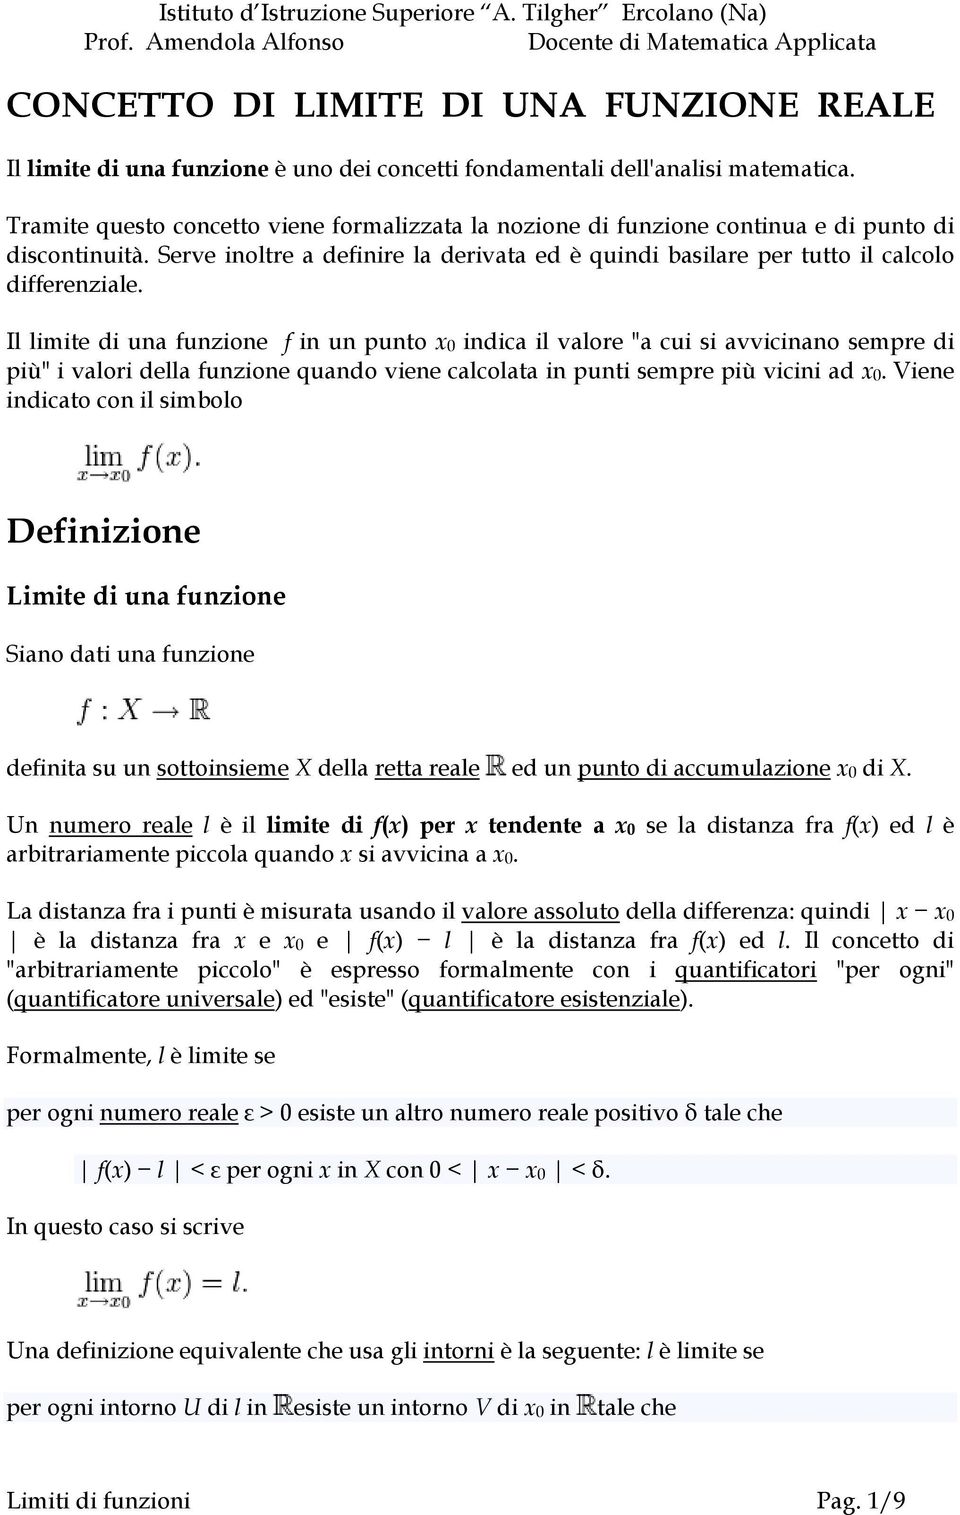 Il limite di una funzione f in un punto x0 indica il valore "a cui si avvicinano sempre di più" i valori della funzione quando viene calcolata in punti sempre più vicini ad x0.